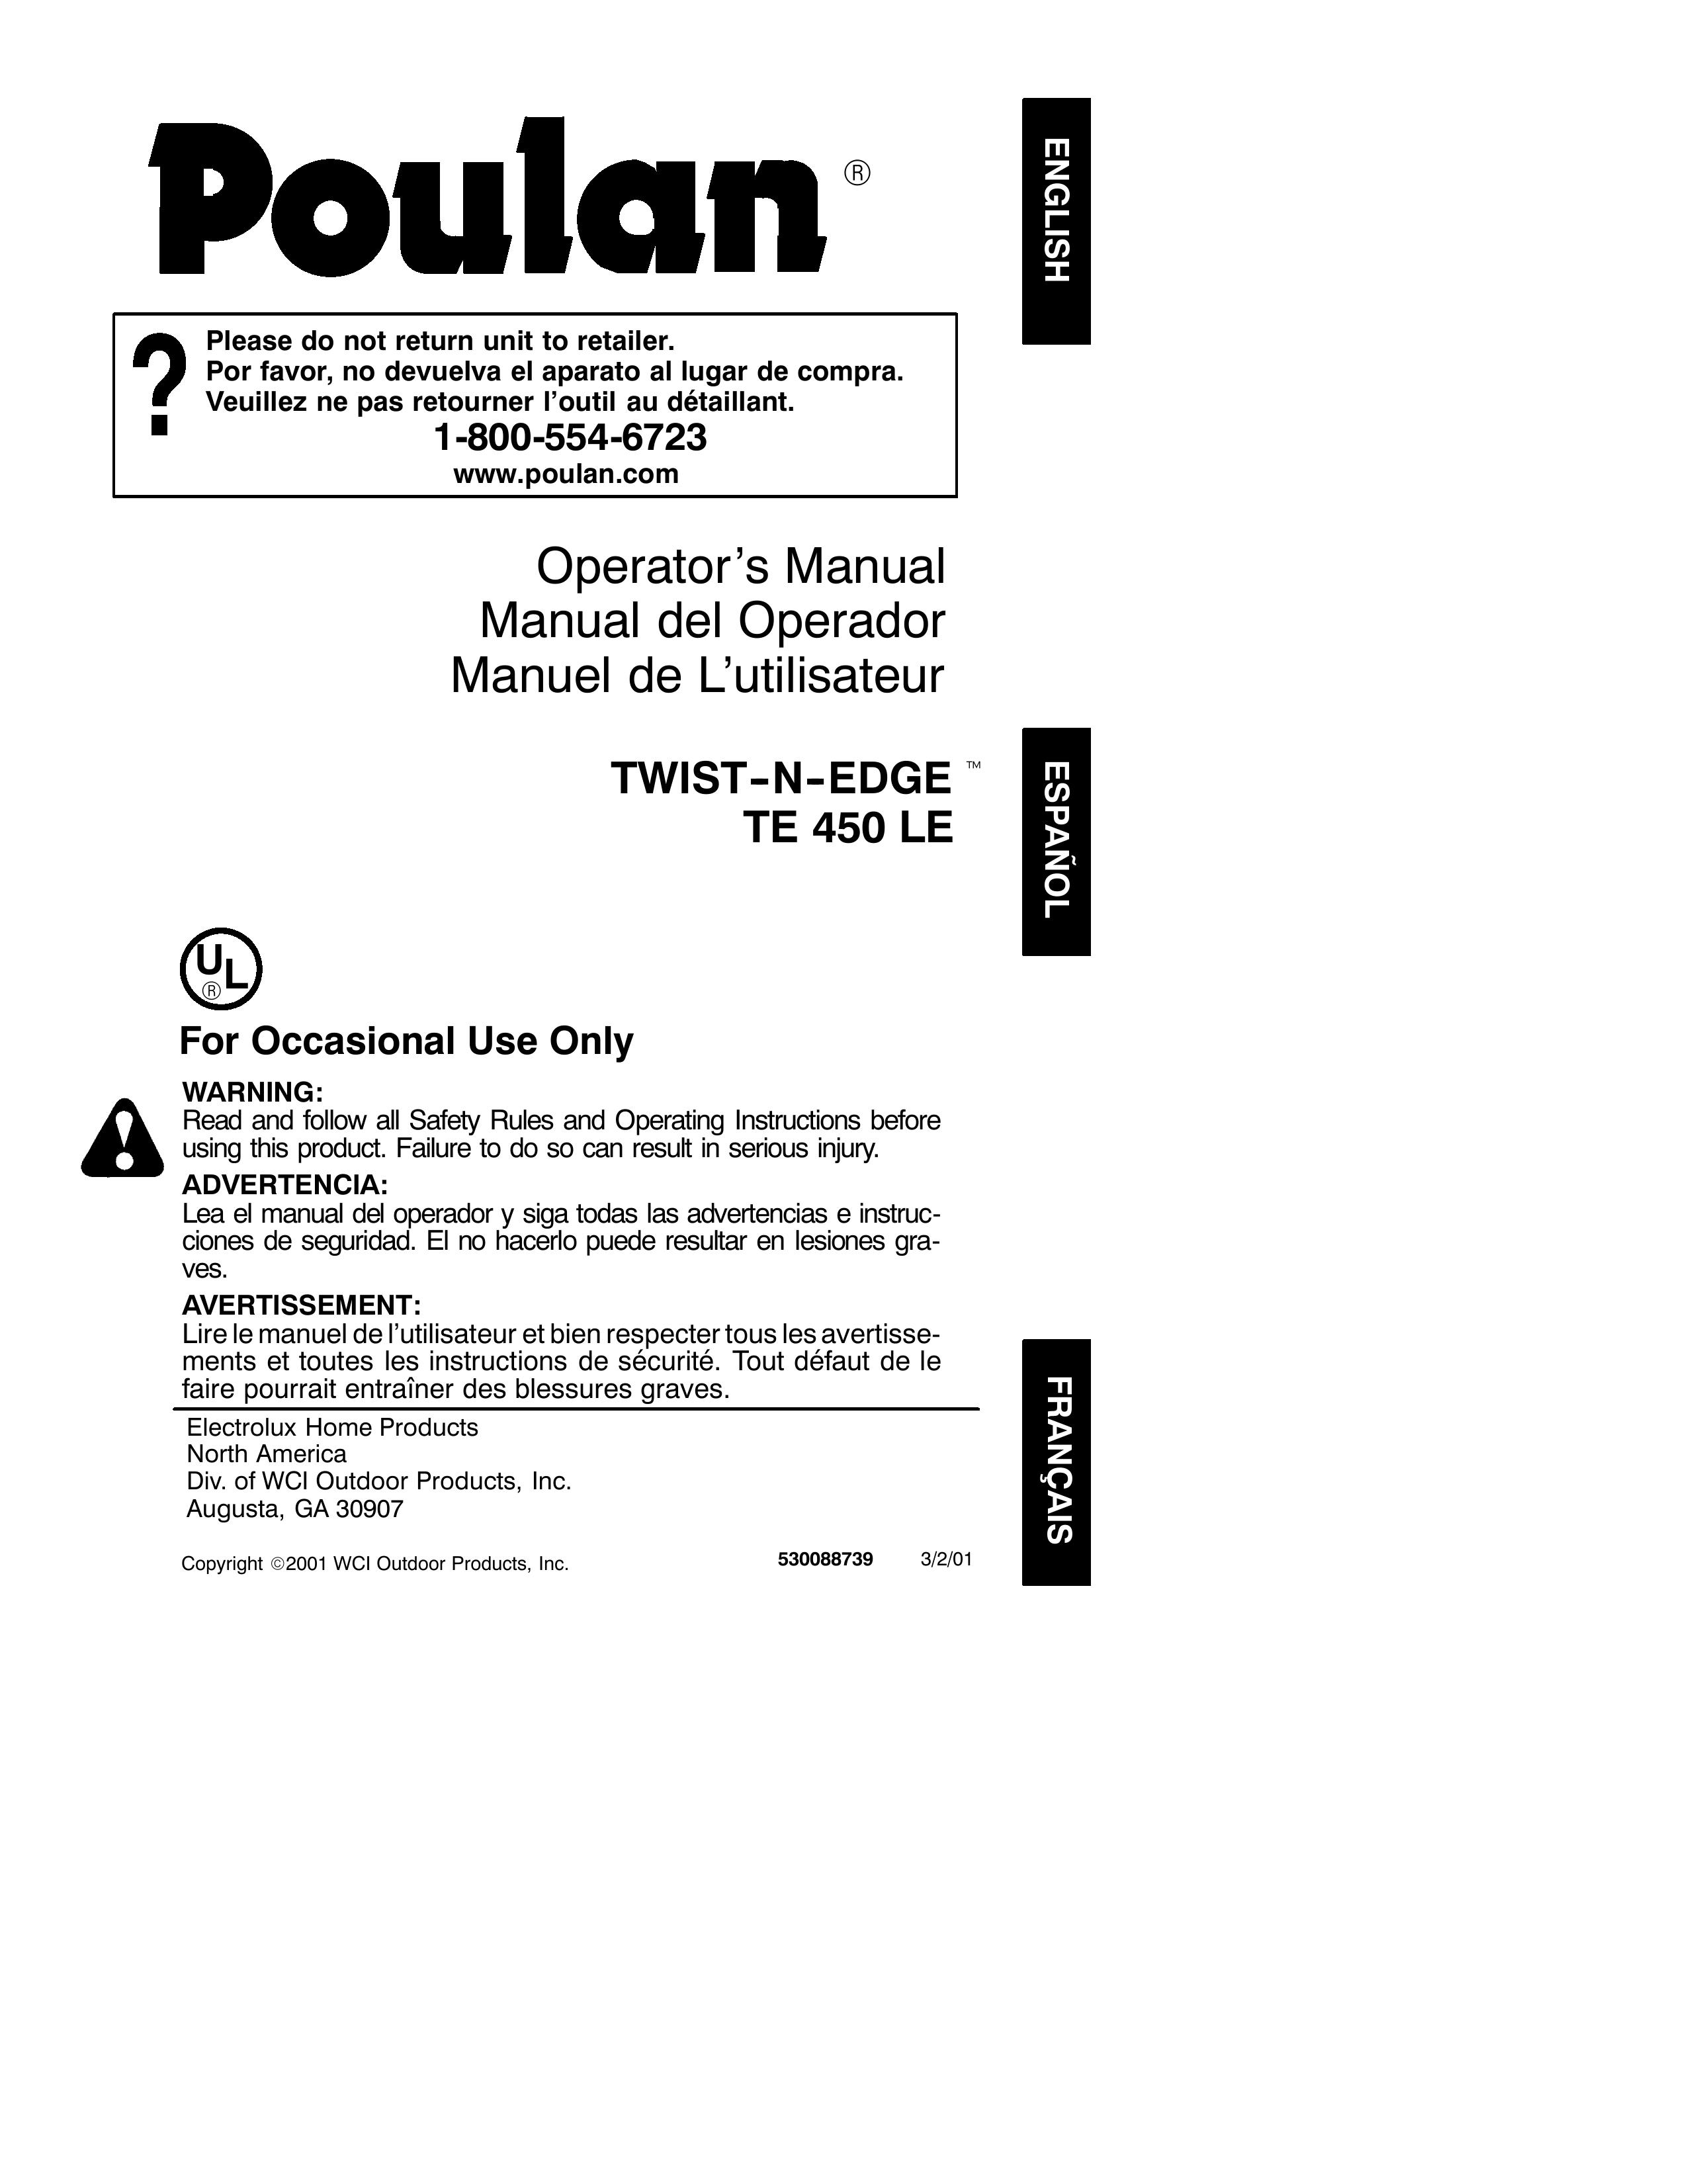 Poulan 530088739 Trimmer User Manual